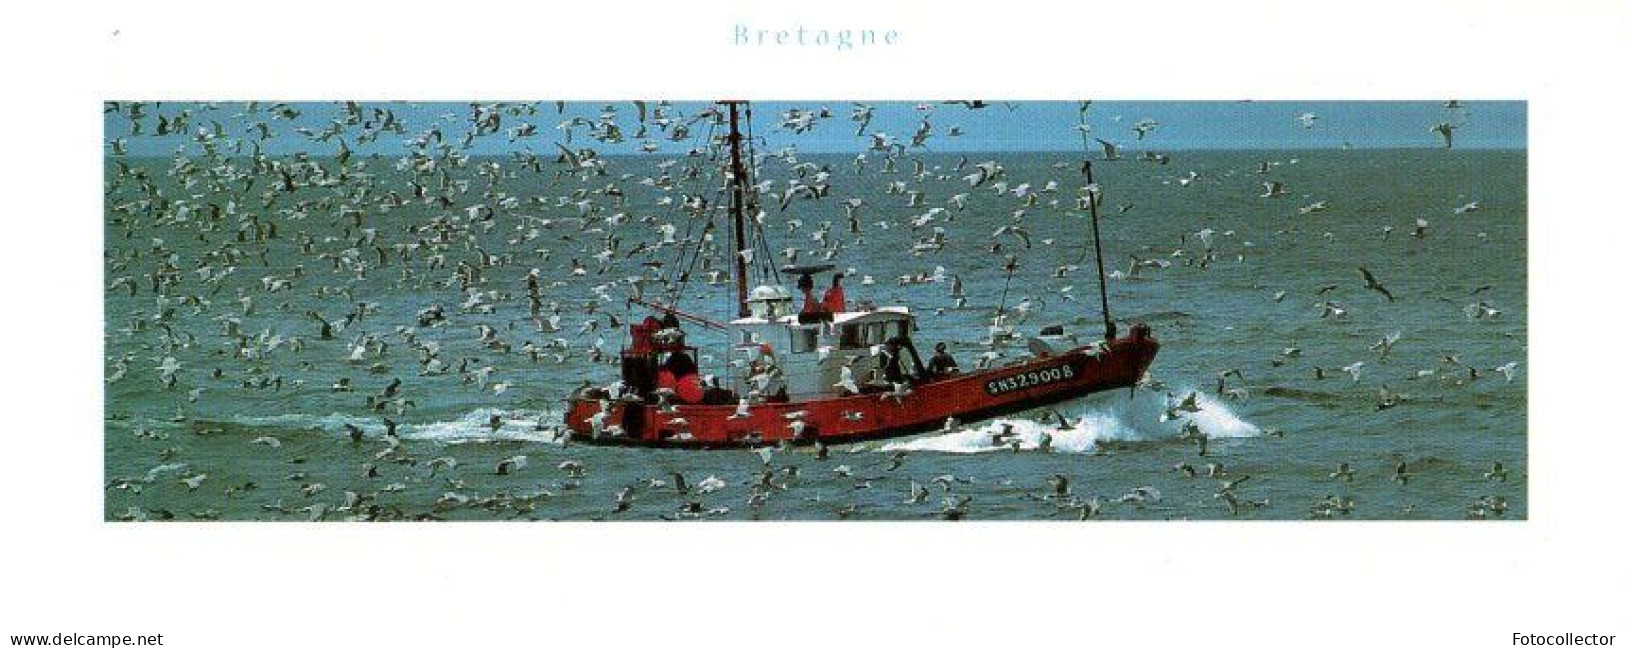 Retour De Pêche Du Chalutier Immatriculé SN329008 (Saint Nazaire 44) - Fishing Boats